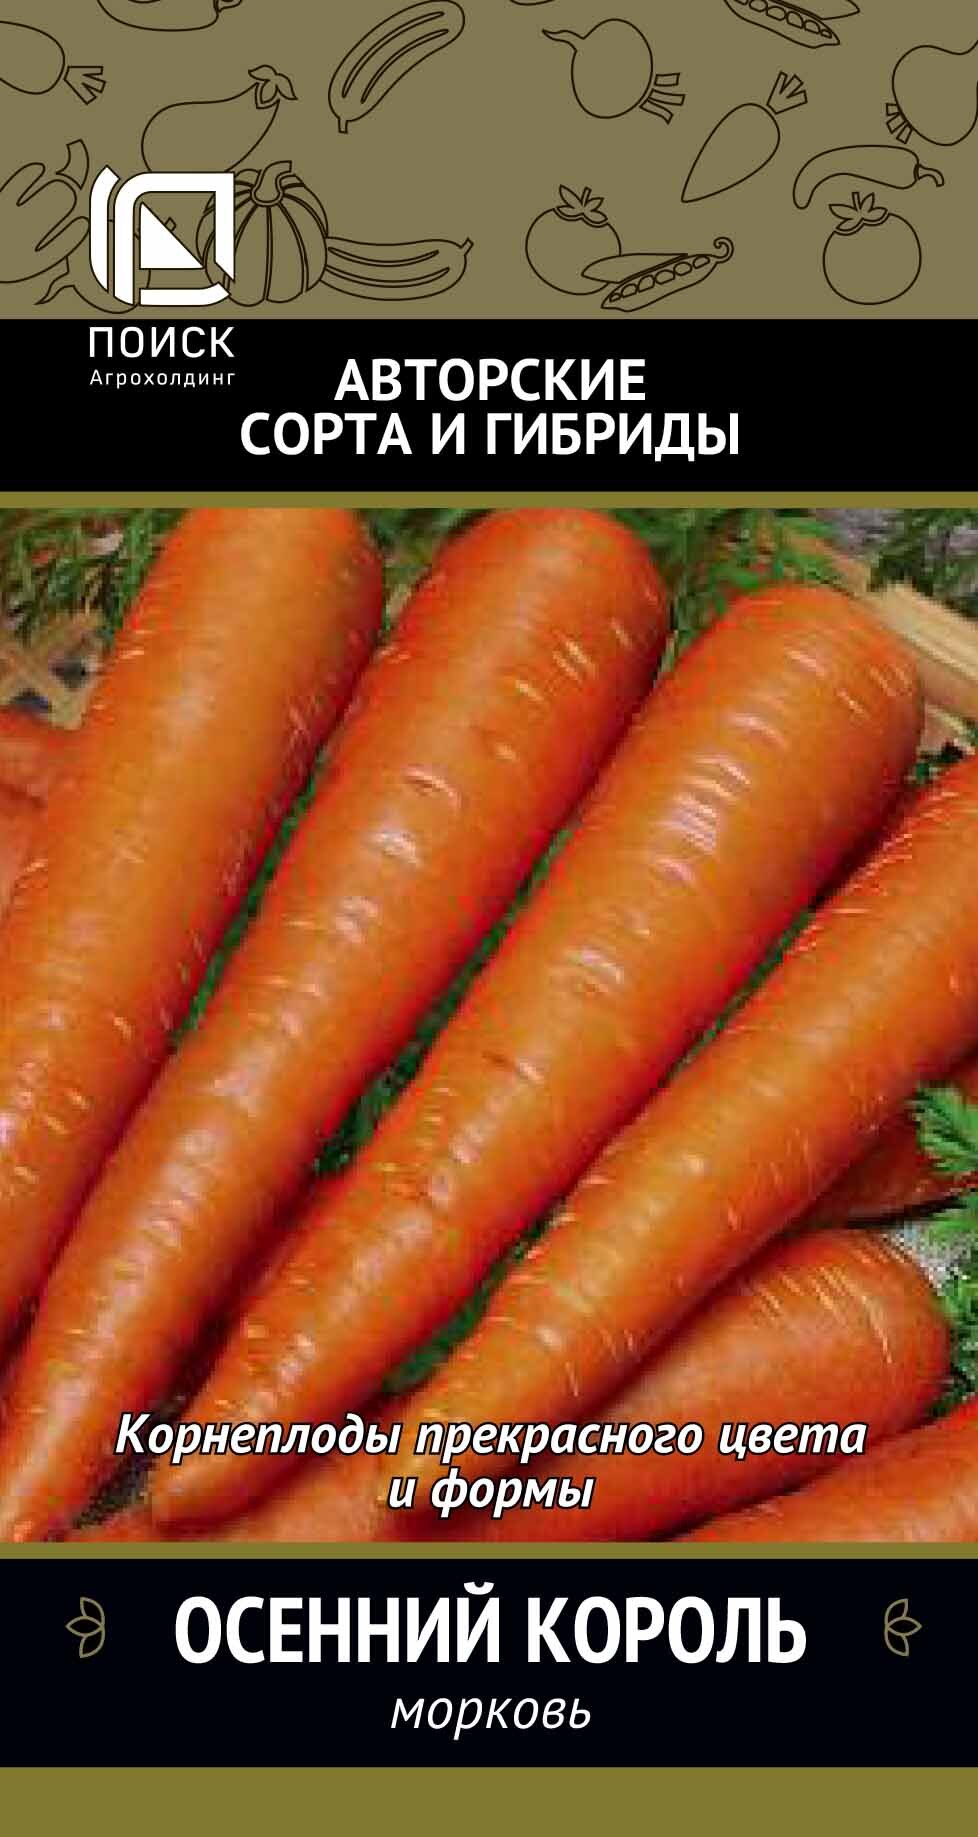 Морковь Осенний король, 2г Поиск